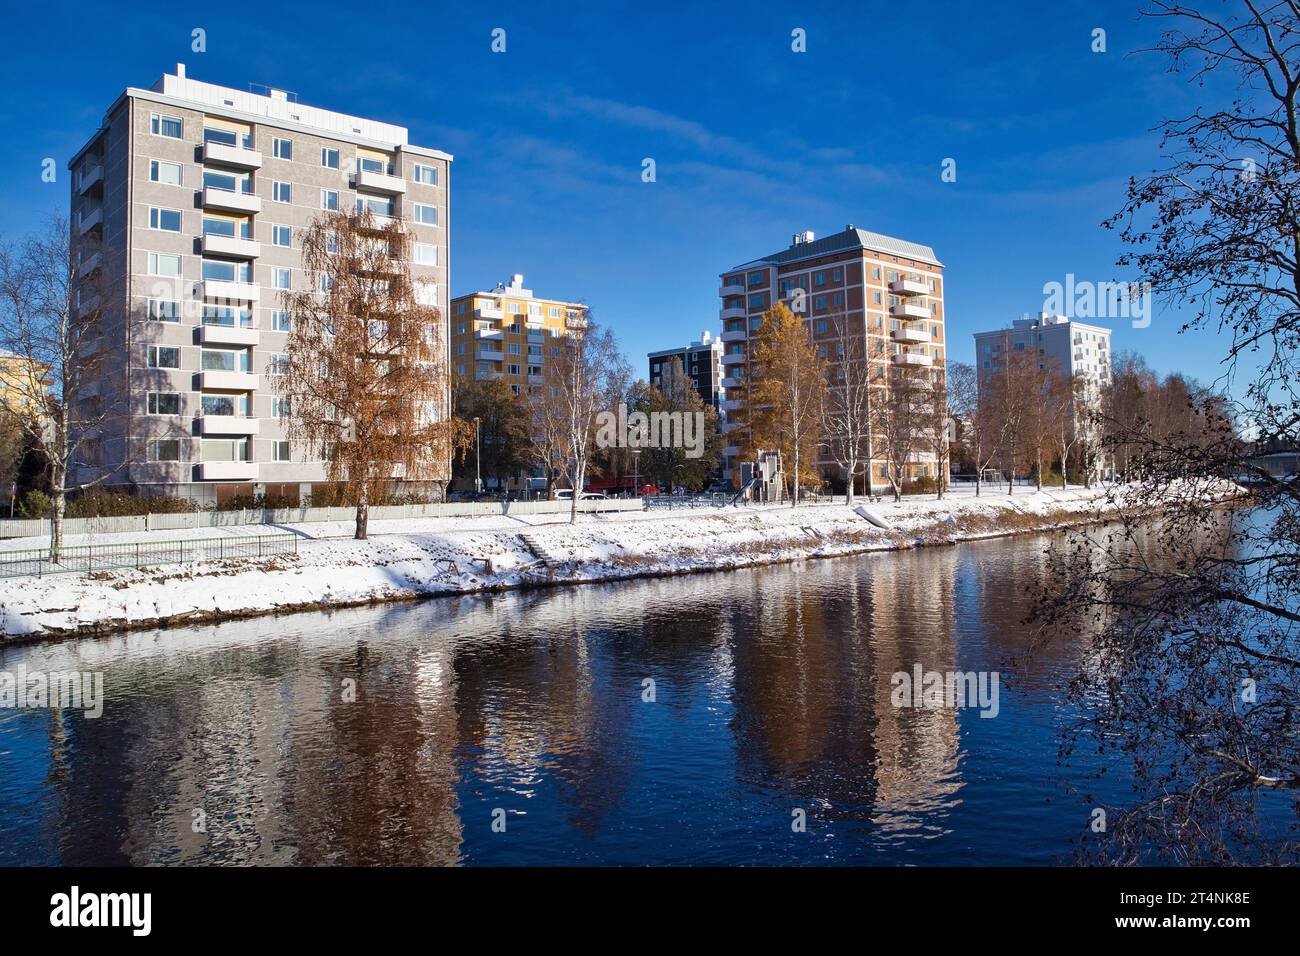 Winter landscape scenery in Oulu, Finland Stock Photo